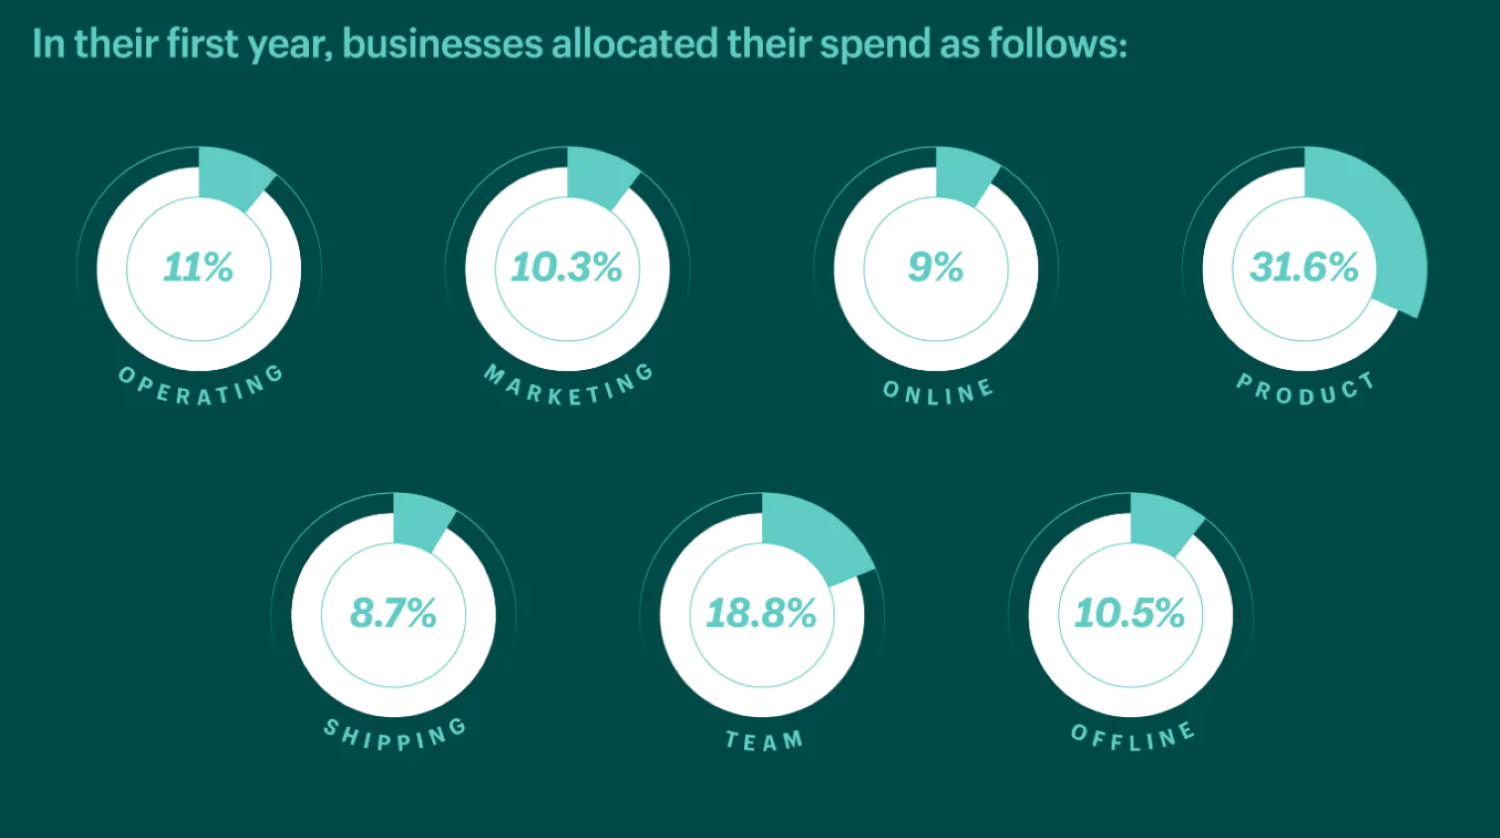 중소기업이 사업 첫해에 자금을 할당하는 방법을 보여주는 7개의 원형 차트입니다.